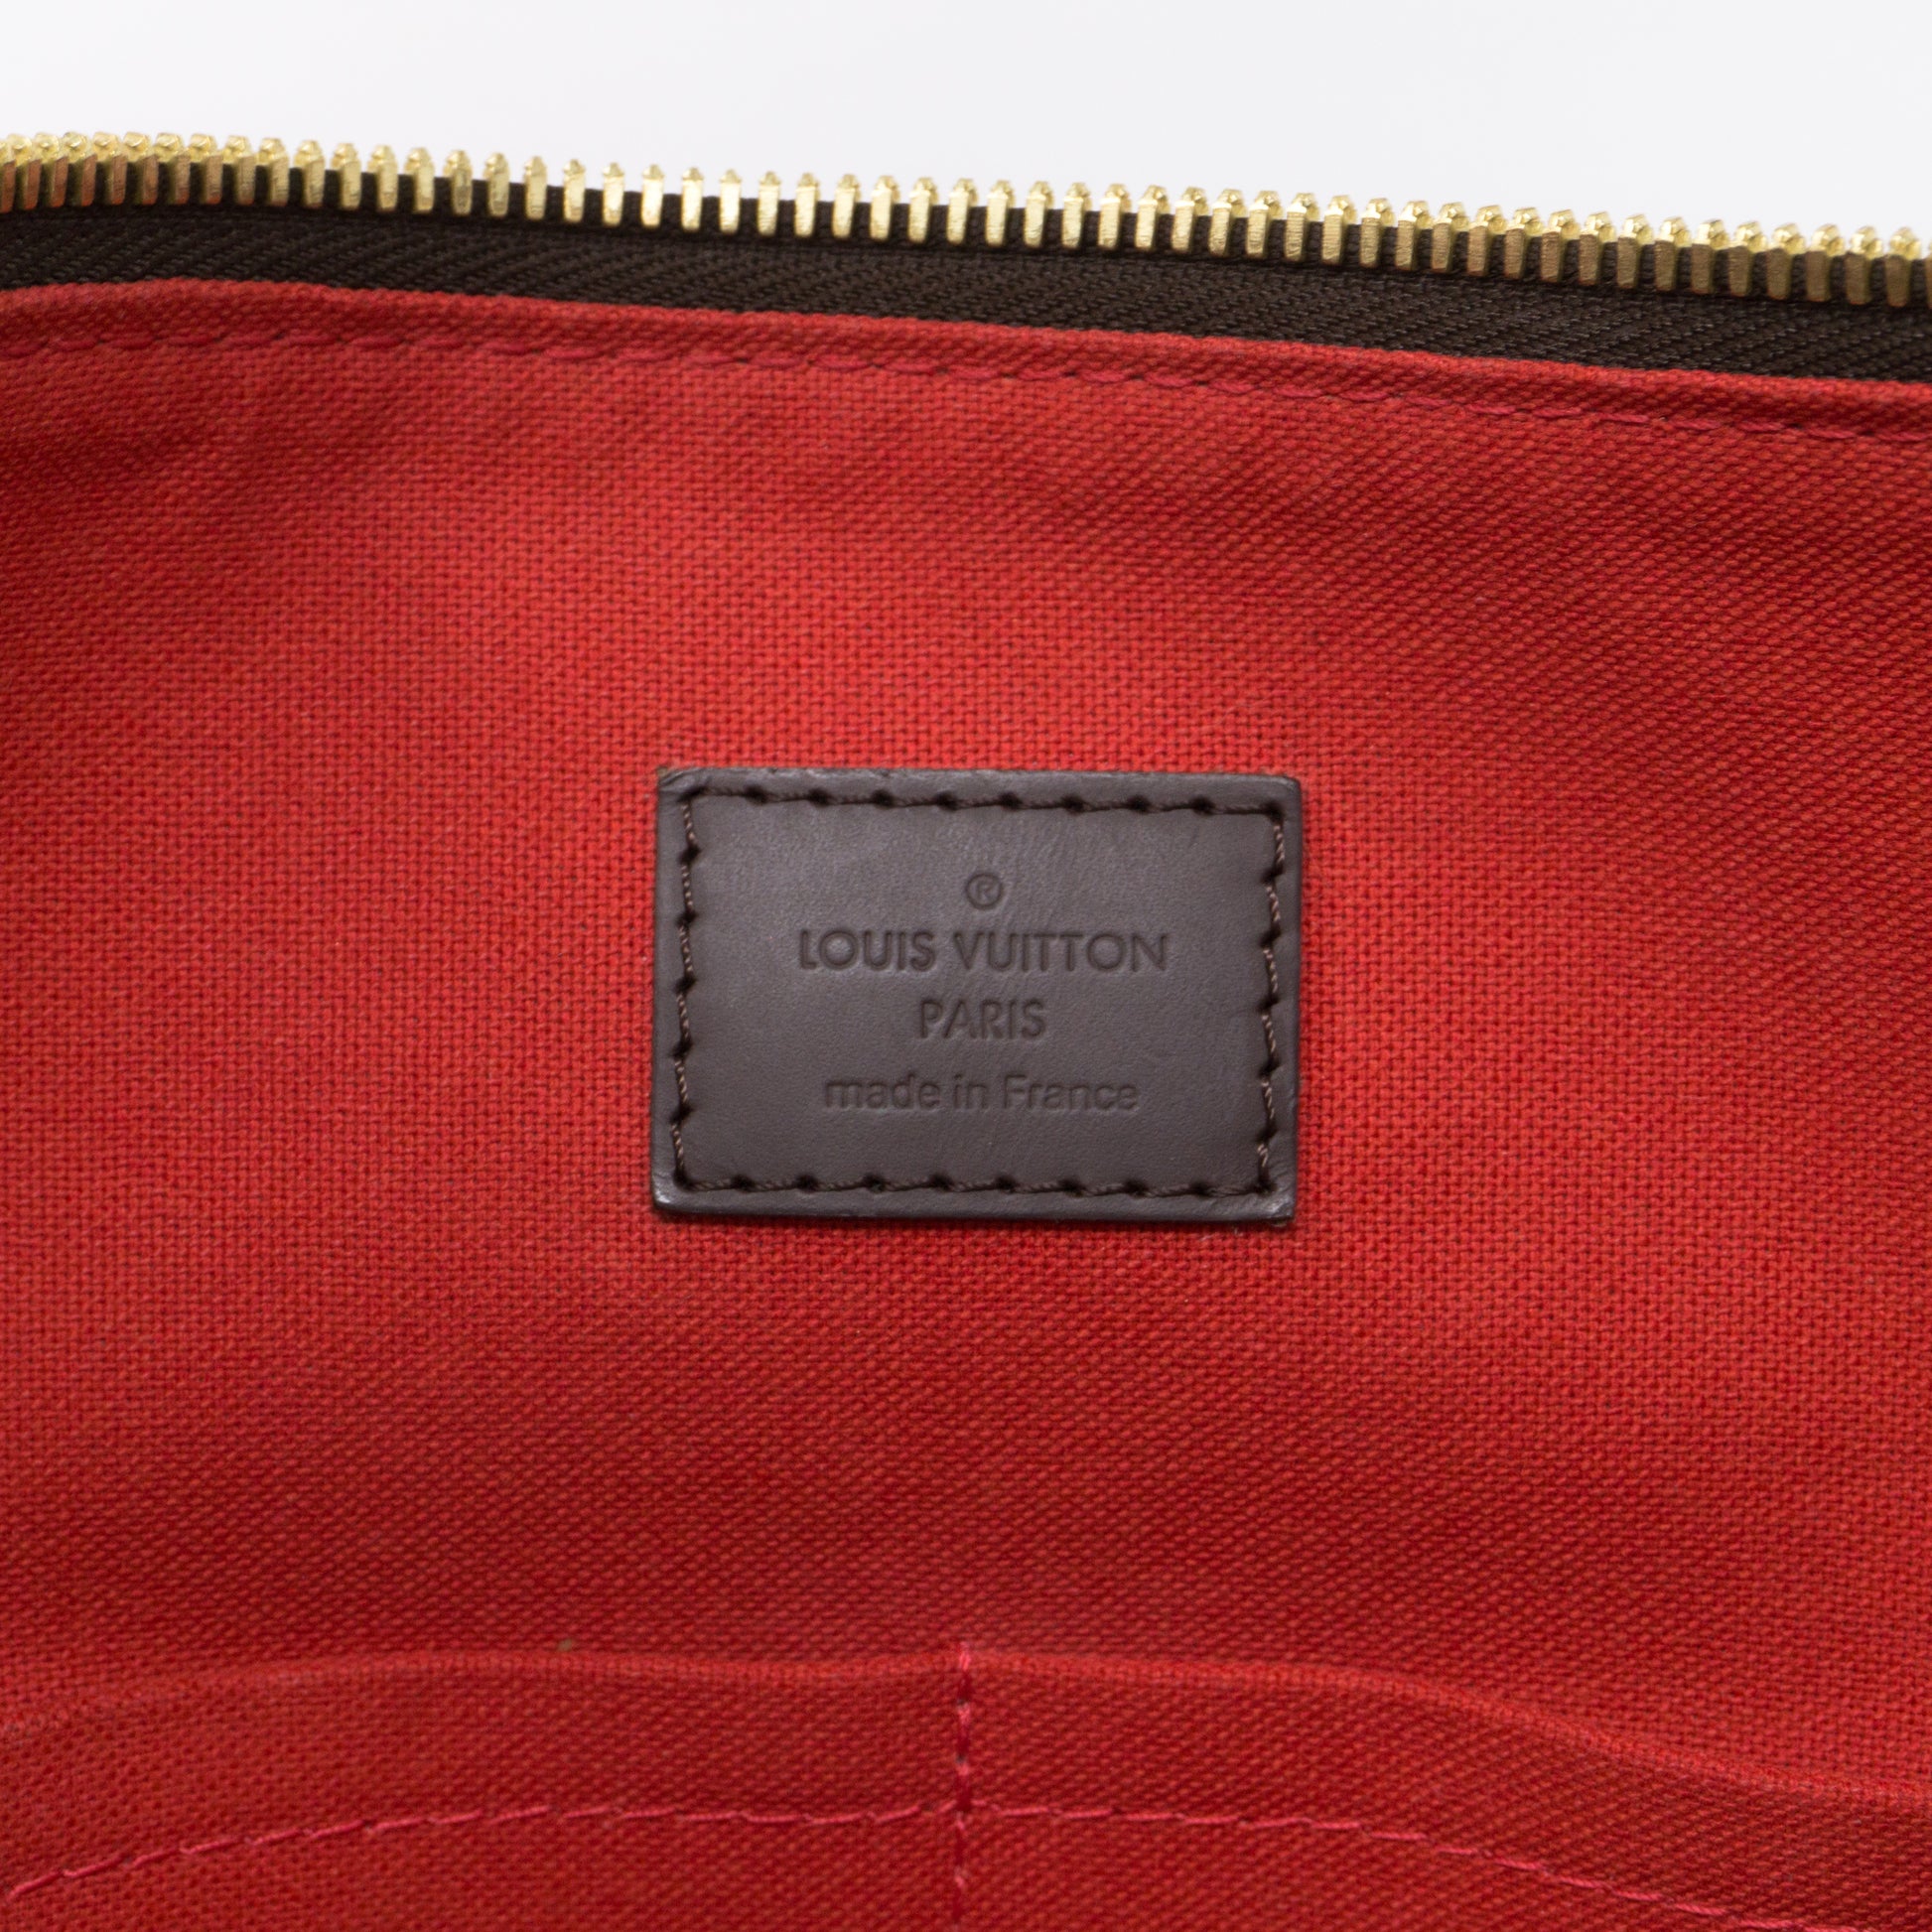 Louis Vuitton Damier Ebene Duomo Hobo - Brown Hobos, Handbags - LOU787845